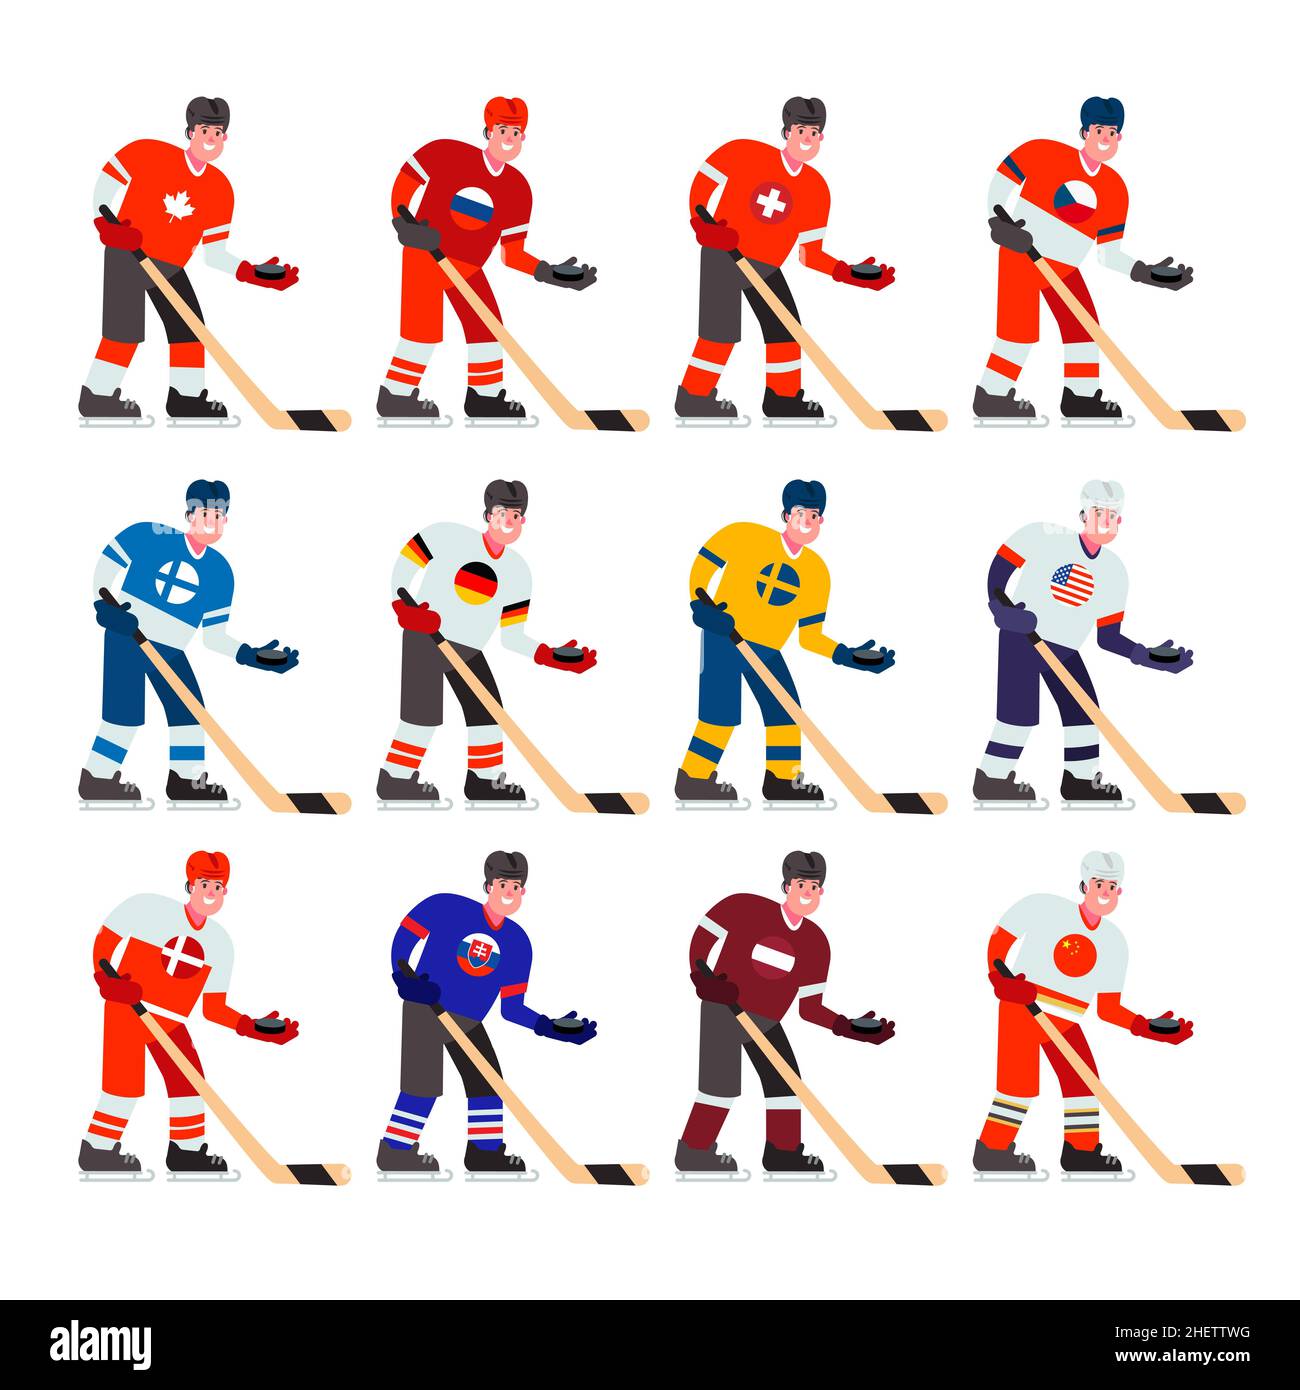 Eine Reihe von Eishockeyspielern mit einem Stock und einem Puck aus verschiedenen Ländern. Vektorgrafik in einem flachen Stil. Stock Vektor